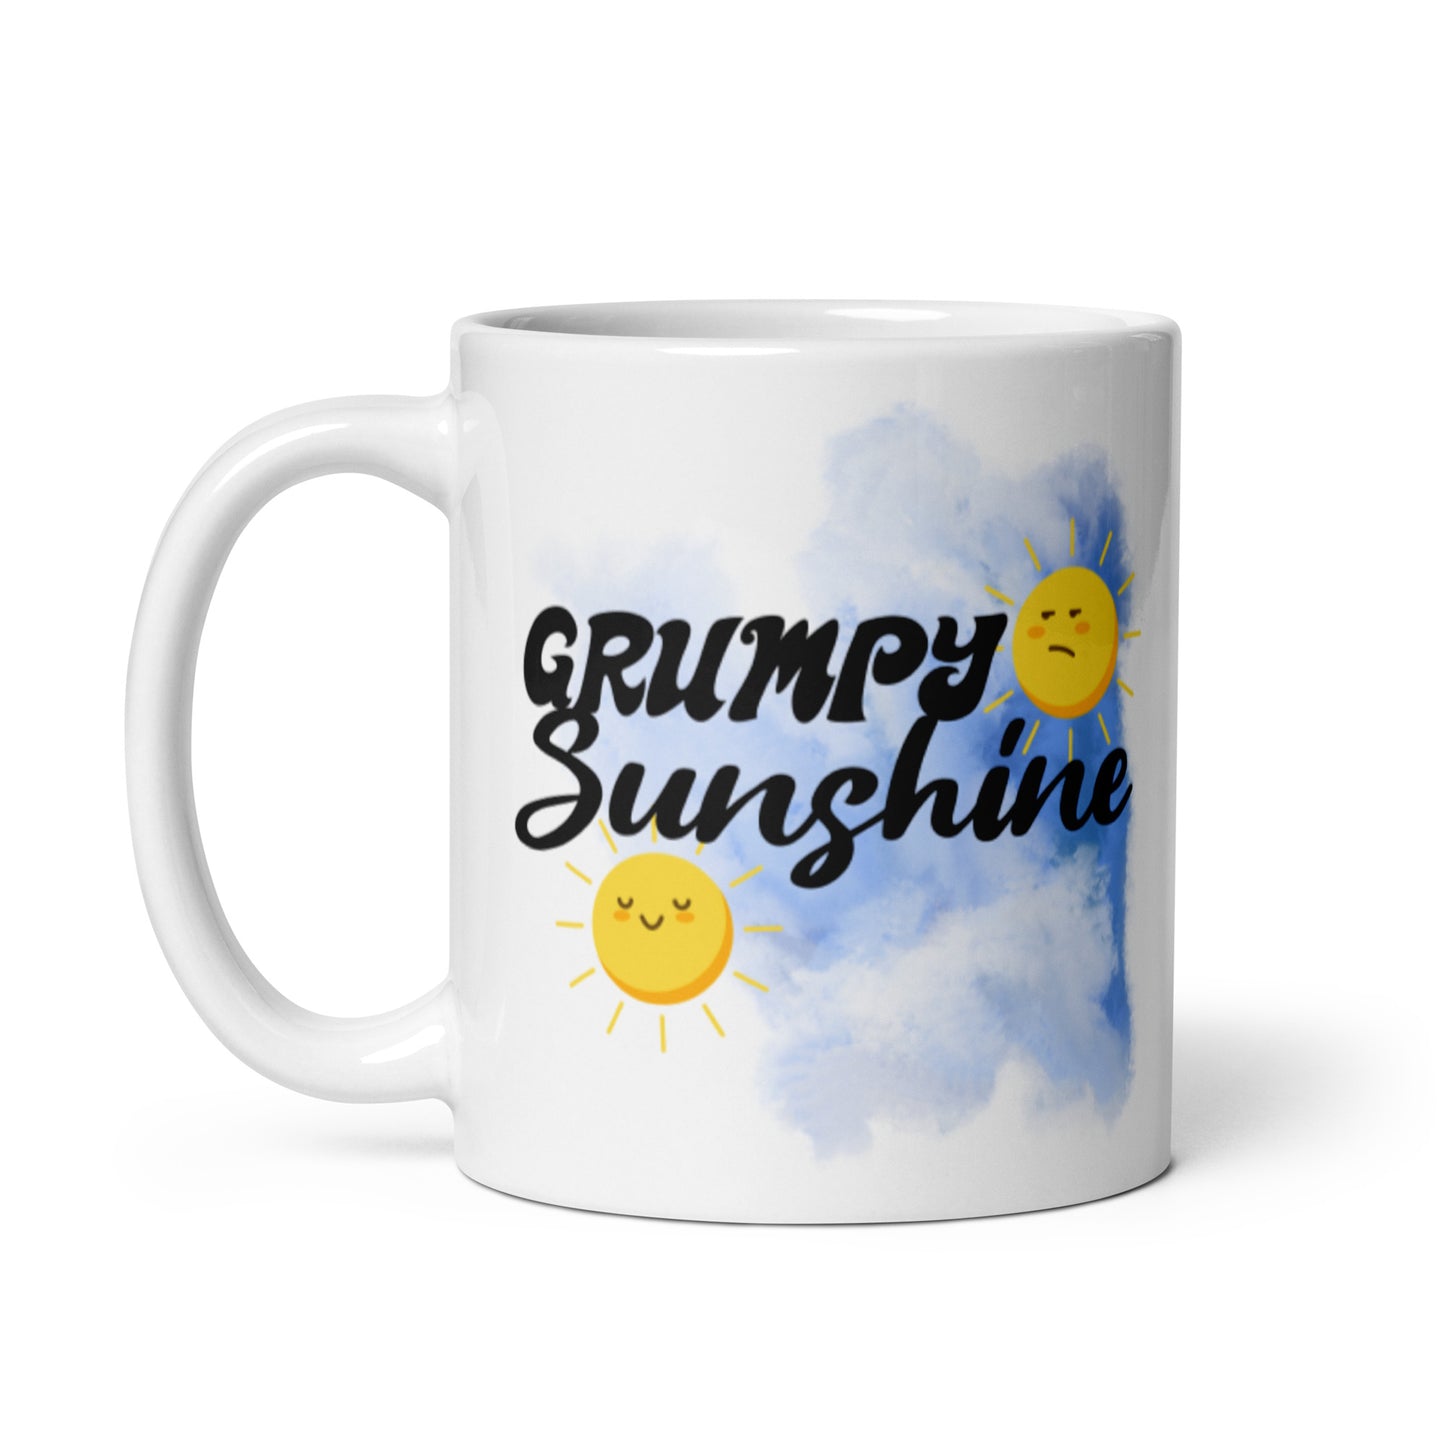 Grumpy Sunshine Mug